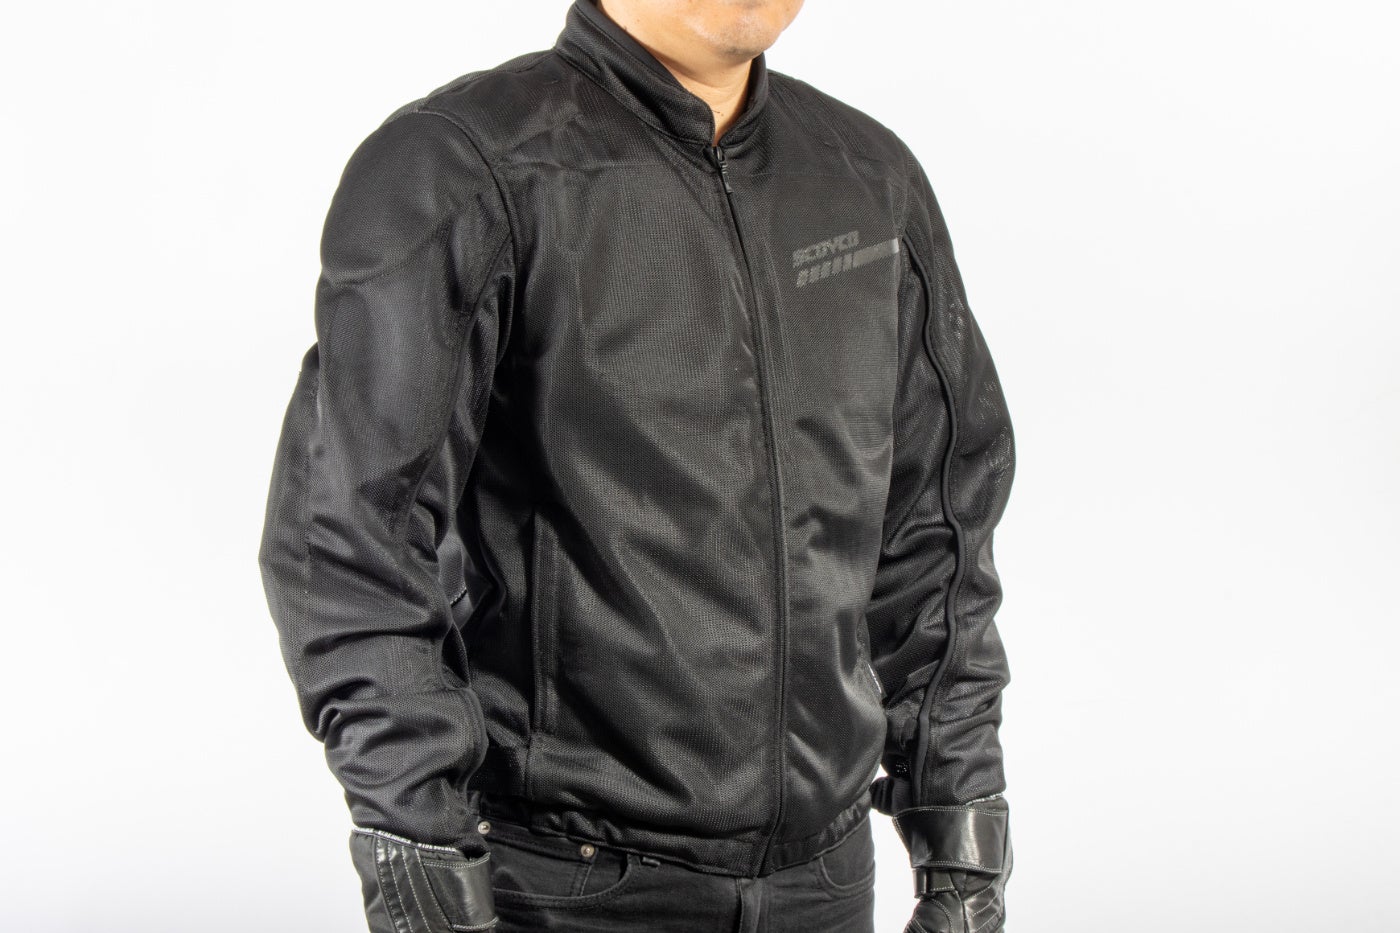 ジャパンフィット&日本専用デザインのメッシュジャケット。業界歴30年の日本人エキスパートがデザイン、サイ...